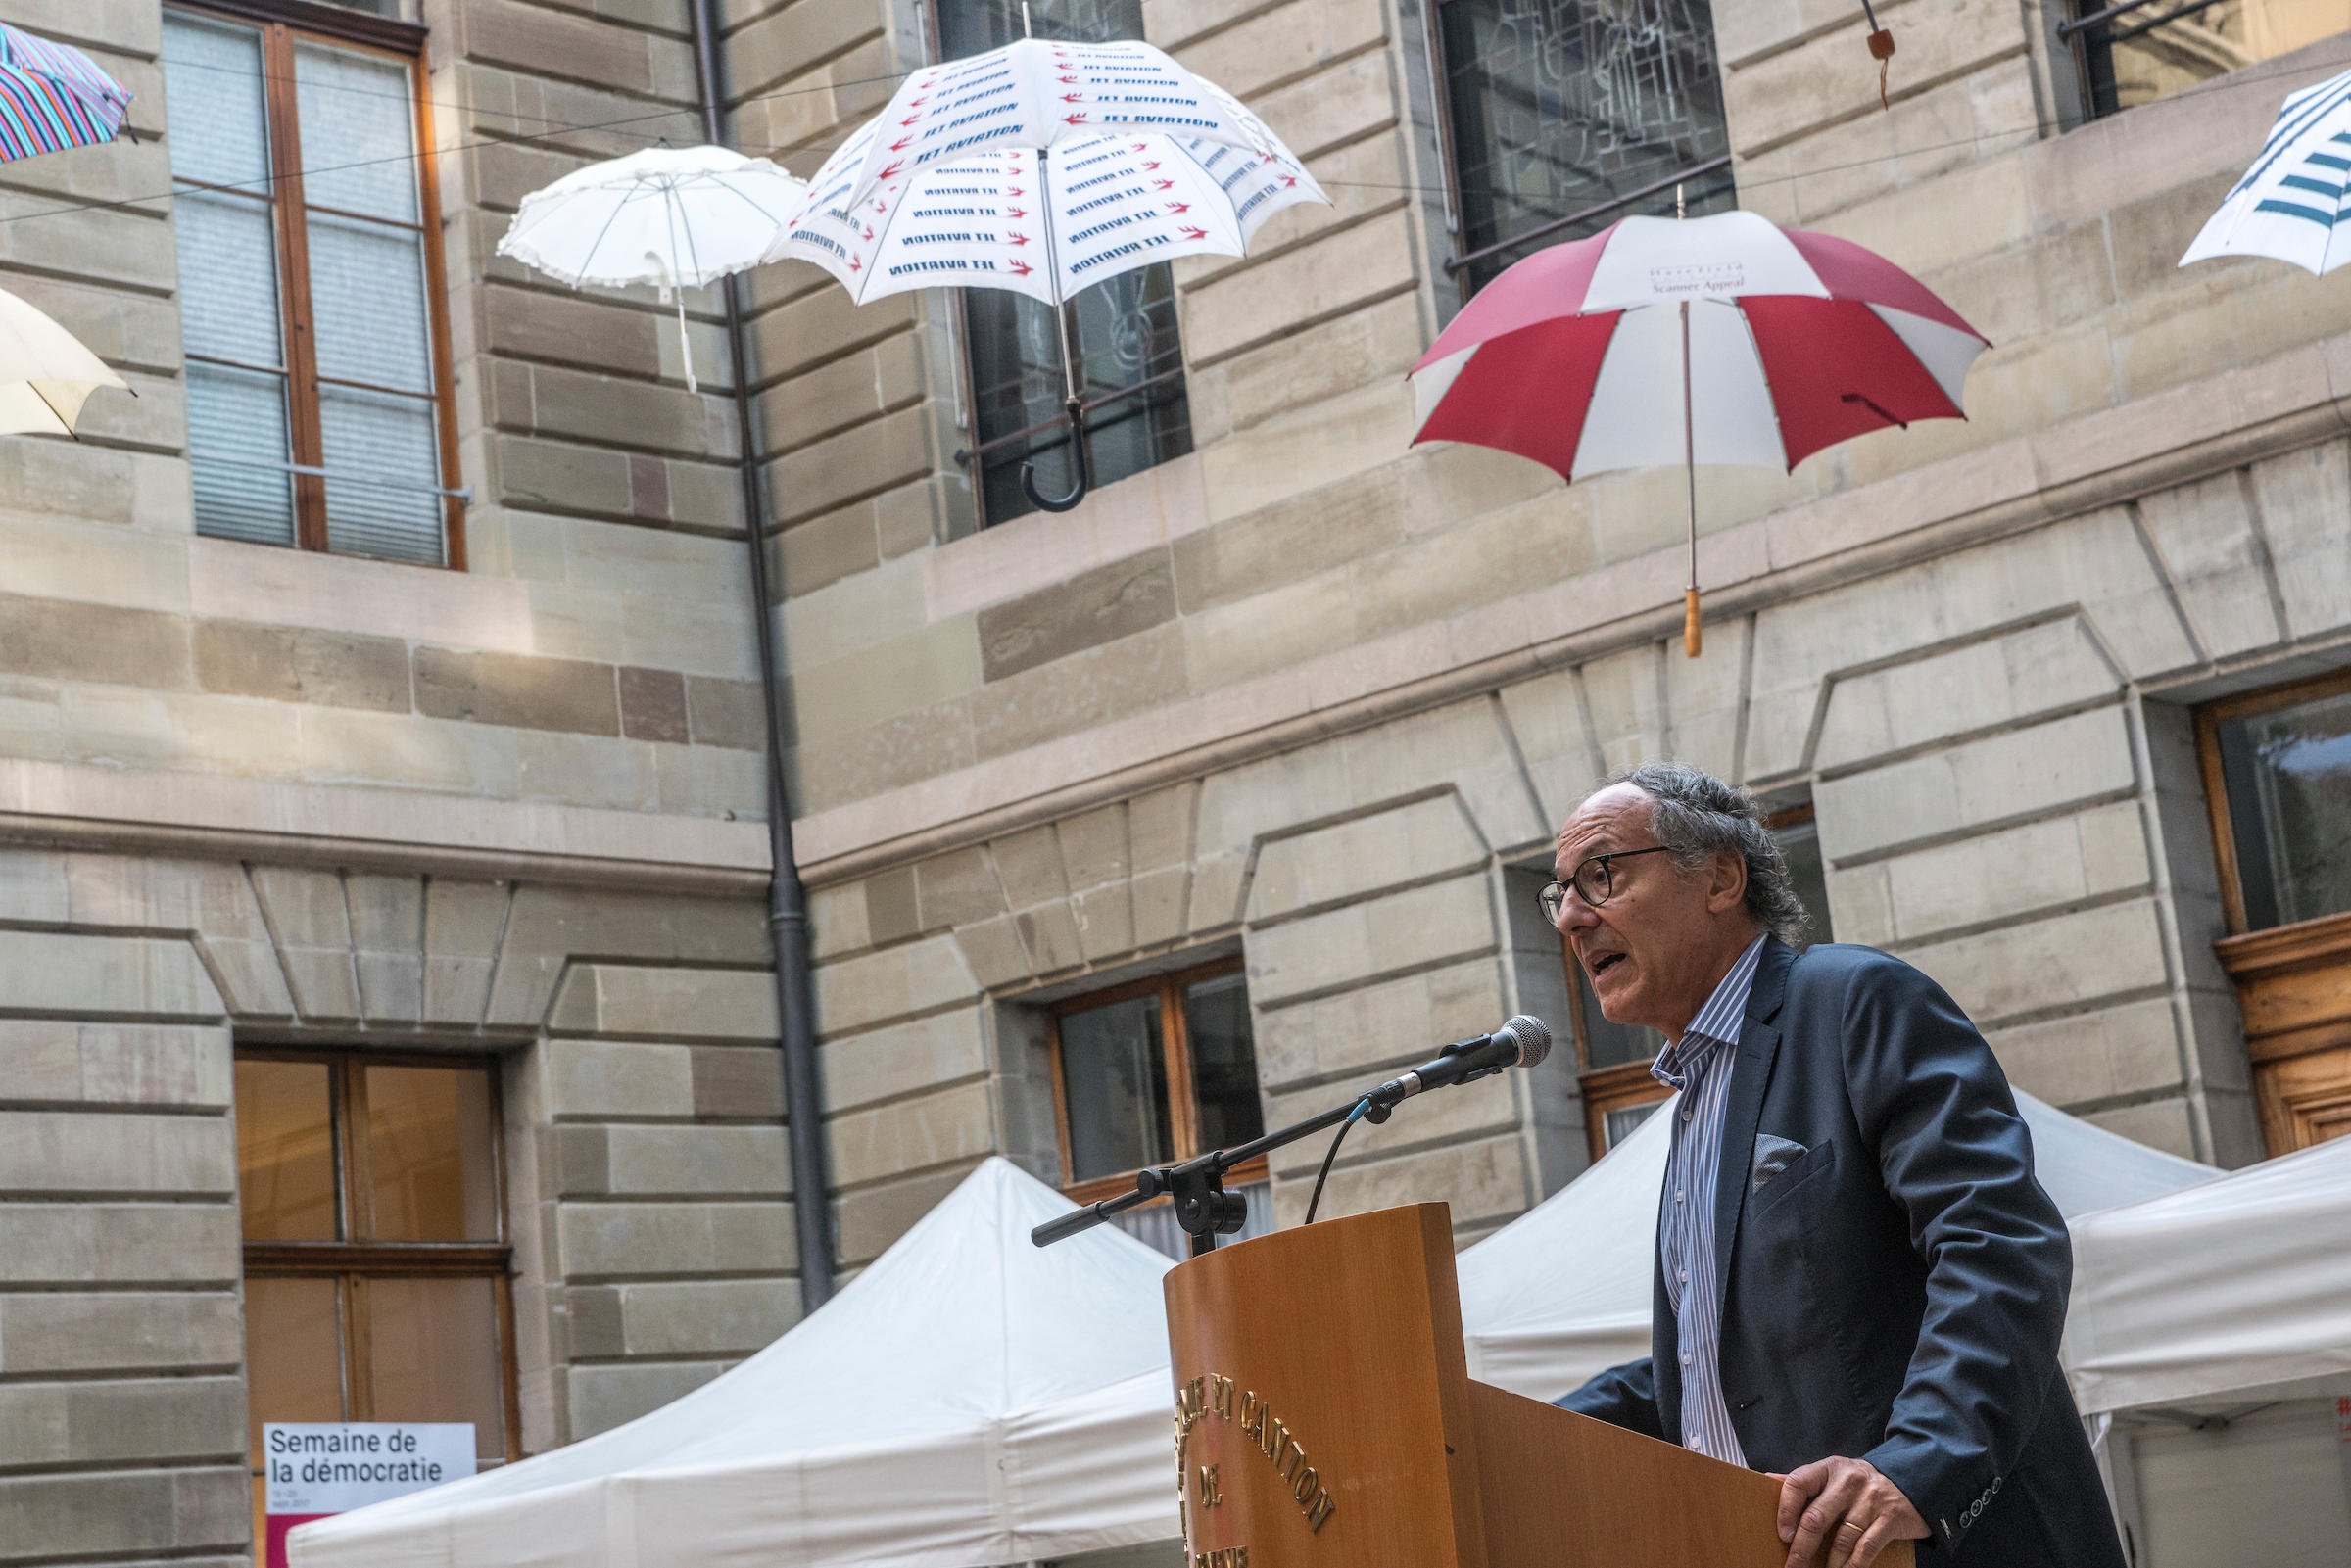 Ein Mann steht vor einem Rednerpult. Im Hintergrund sind Regenschirme künstlerisch aufgehängt.